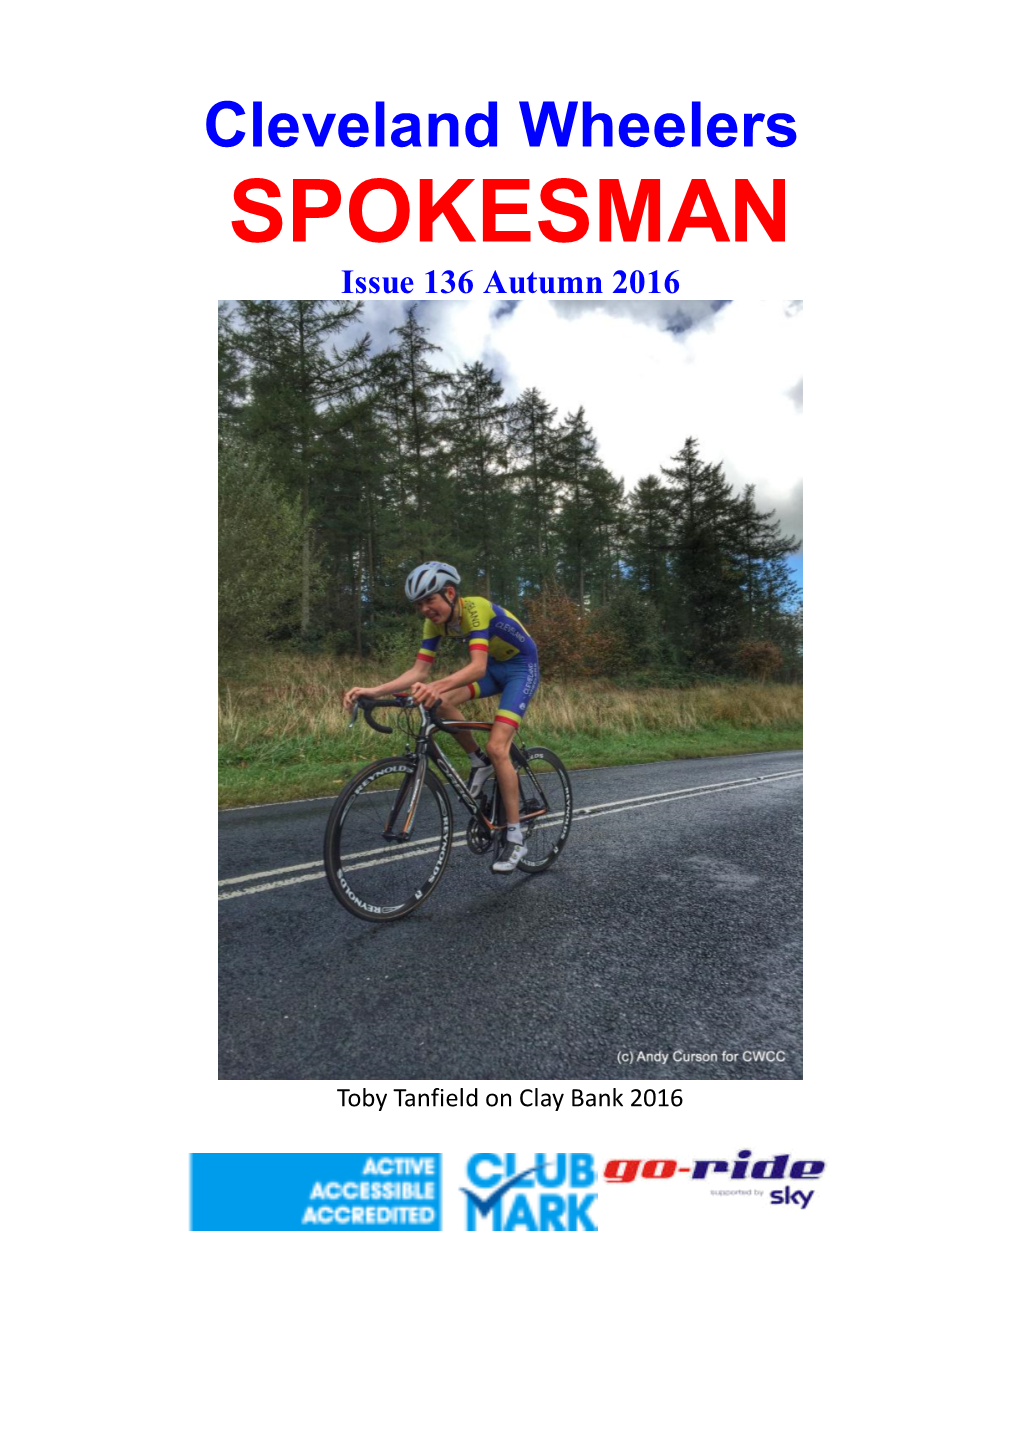 SPOKESMAN Issue 136 Autumn 2016